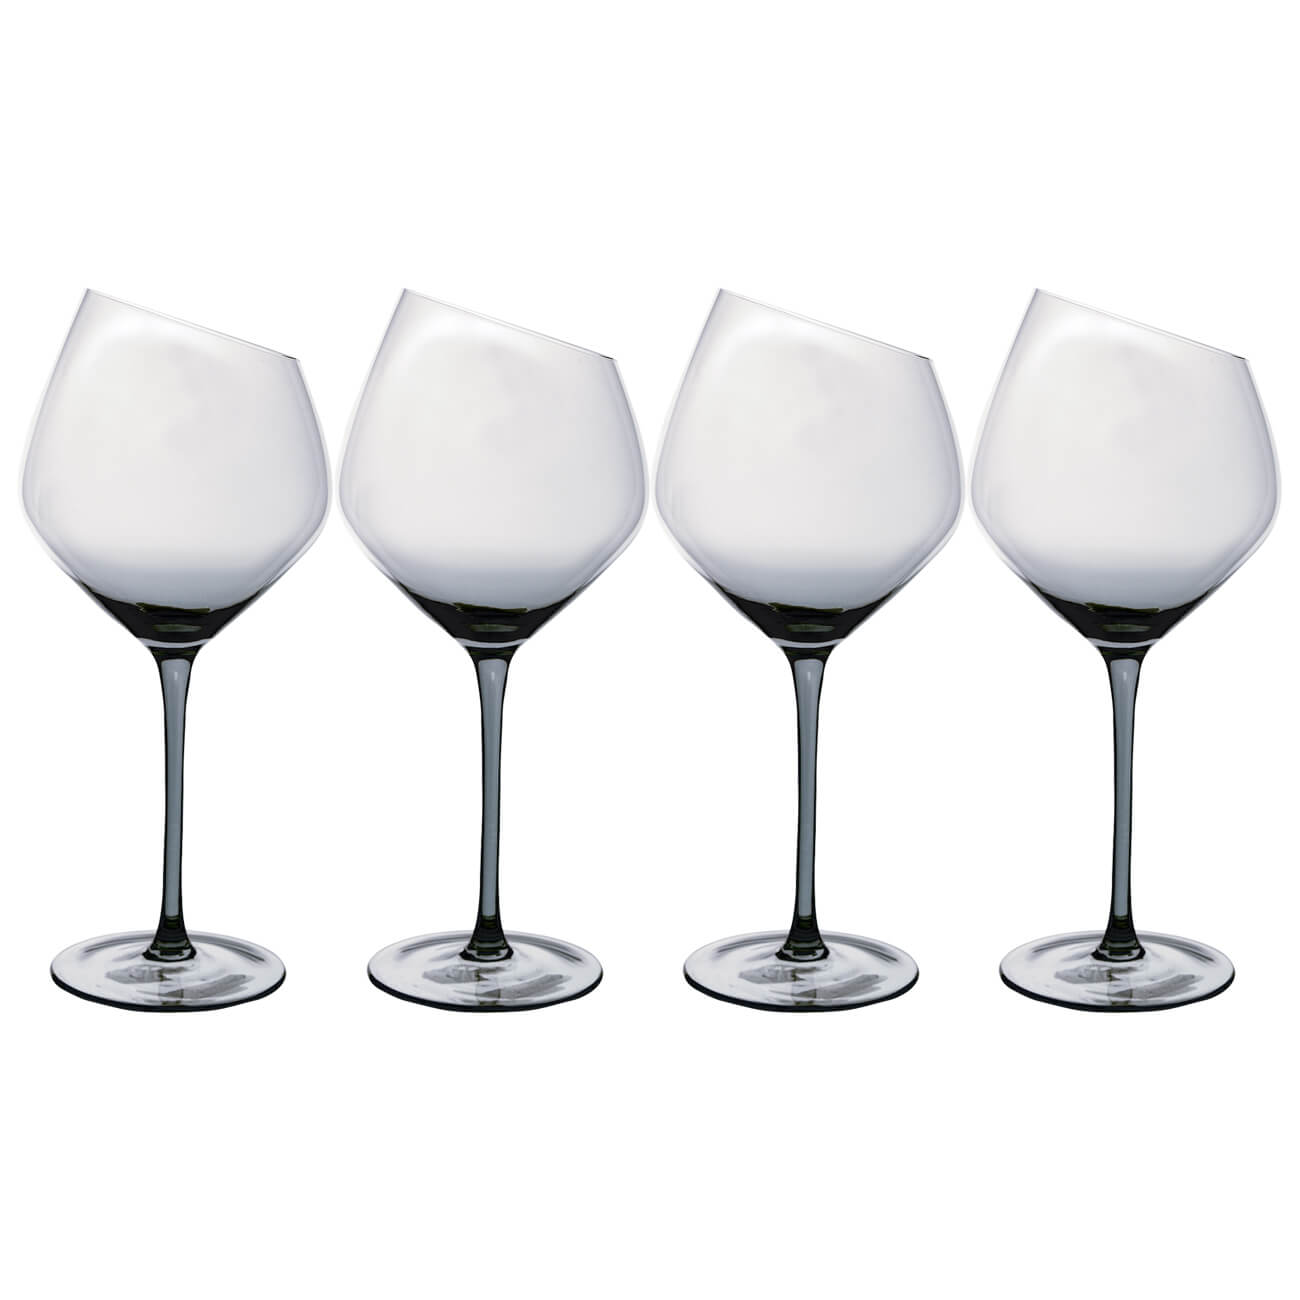 Бокал для красного вина, 560 мл, 4 шт, стекло, серый, Charm L Color бокал для белого вина 460 мл 4 шт charm l